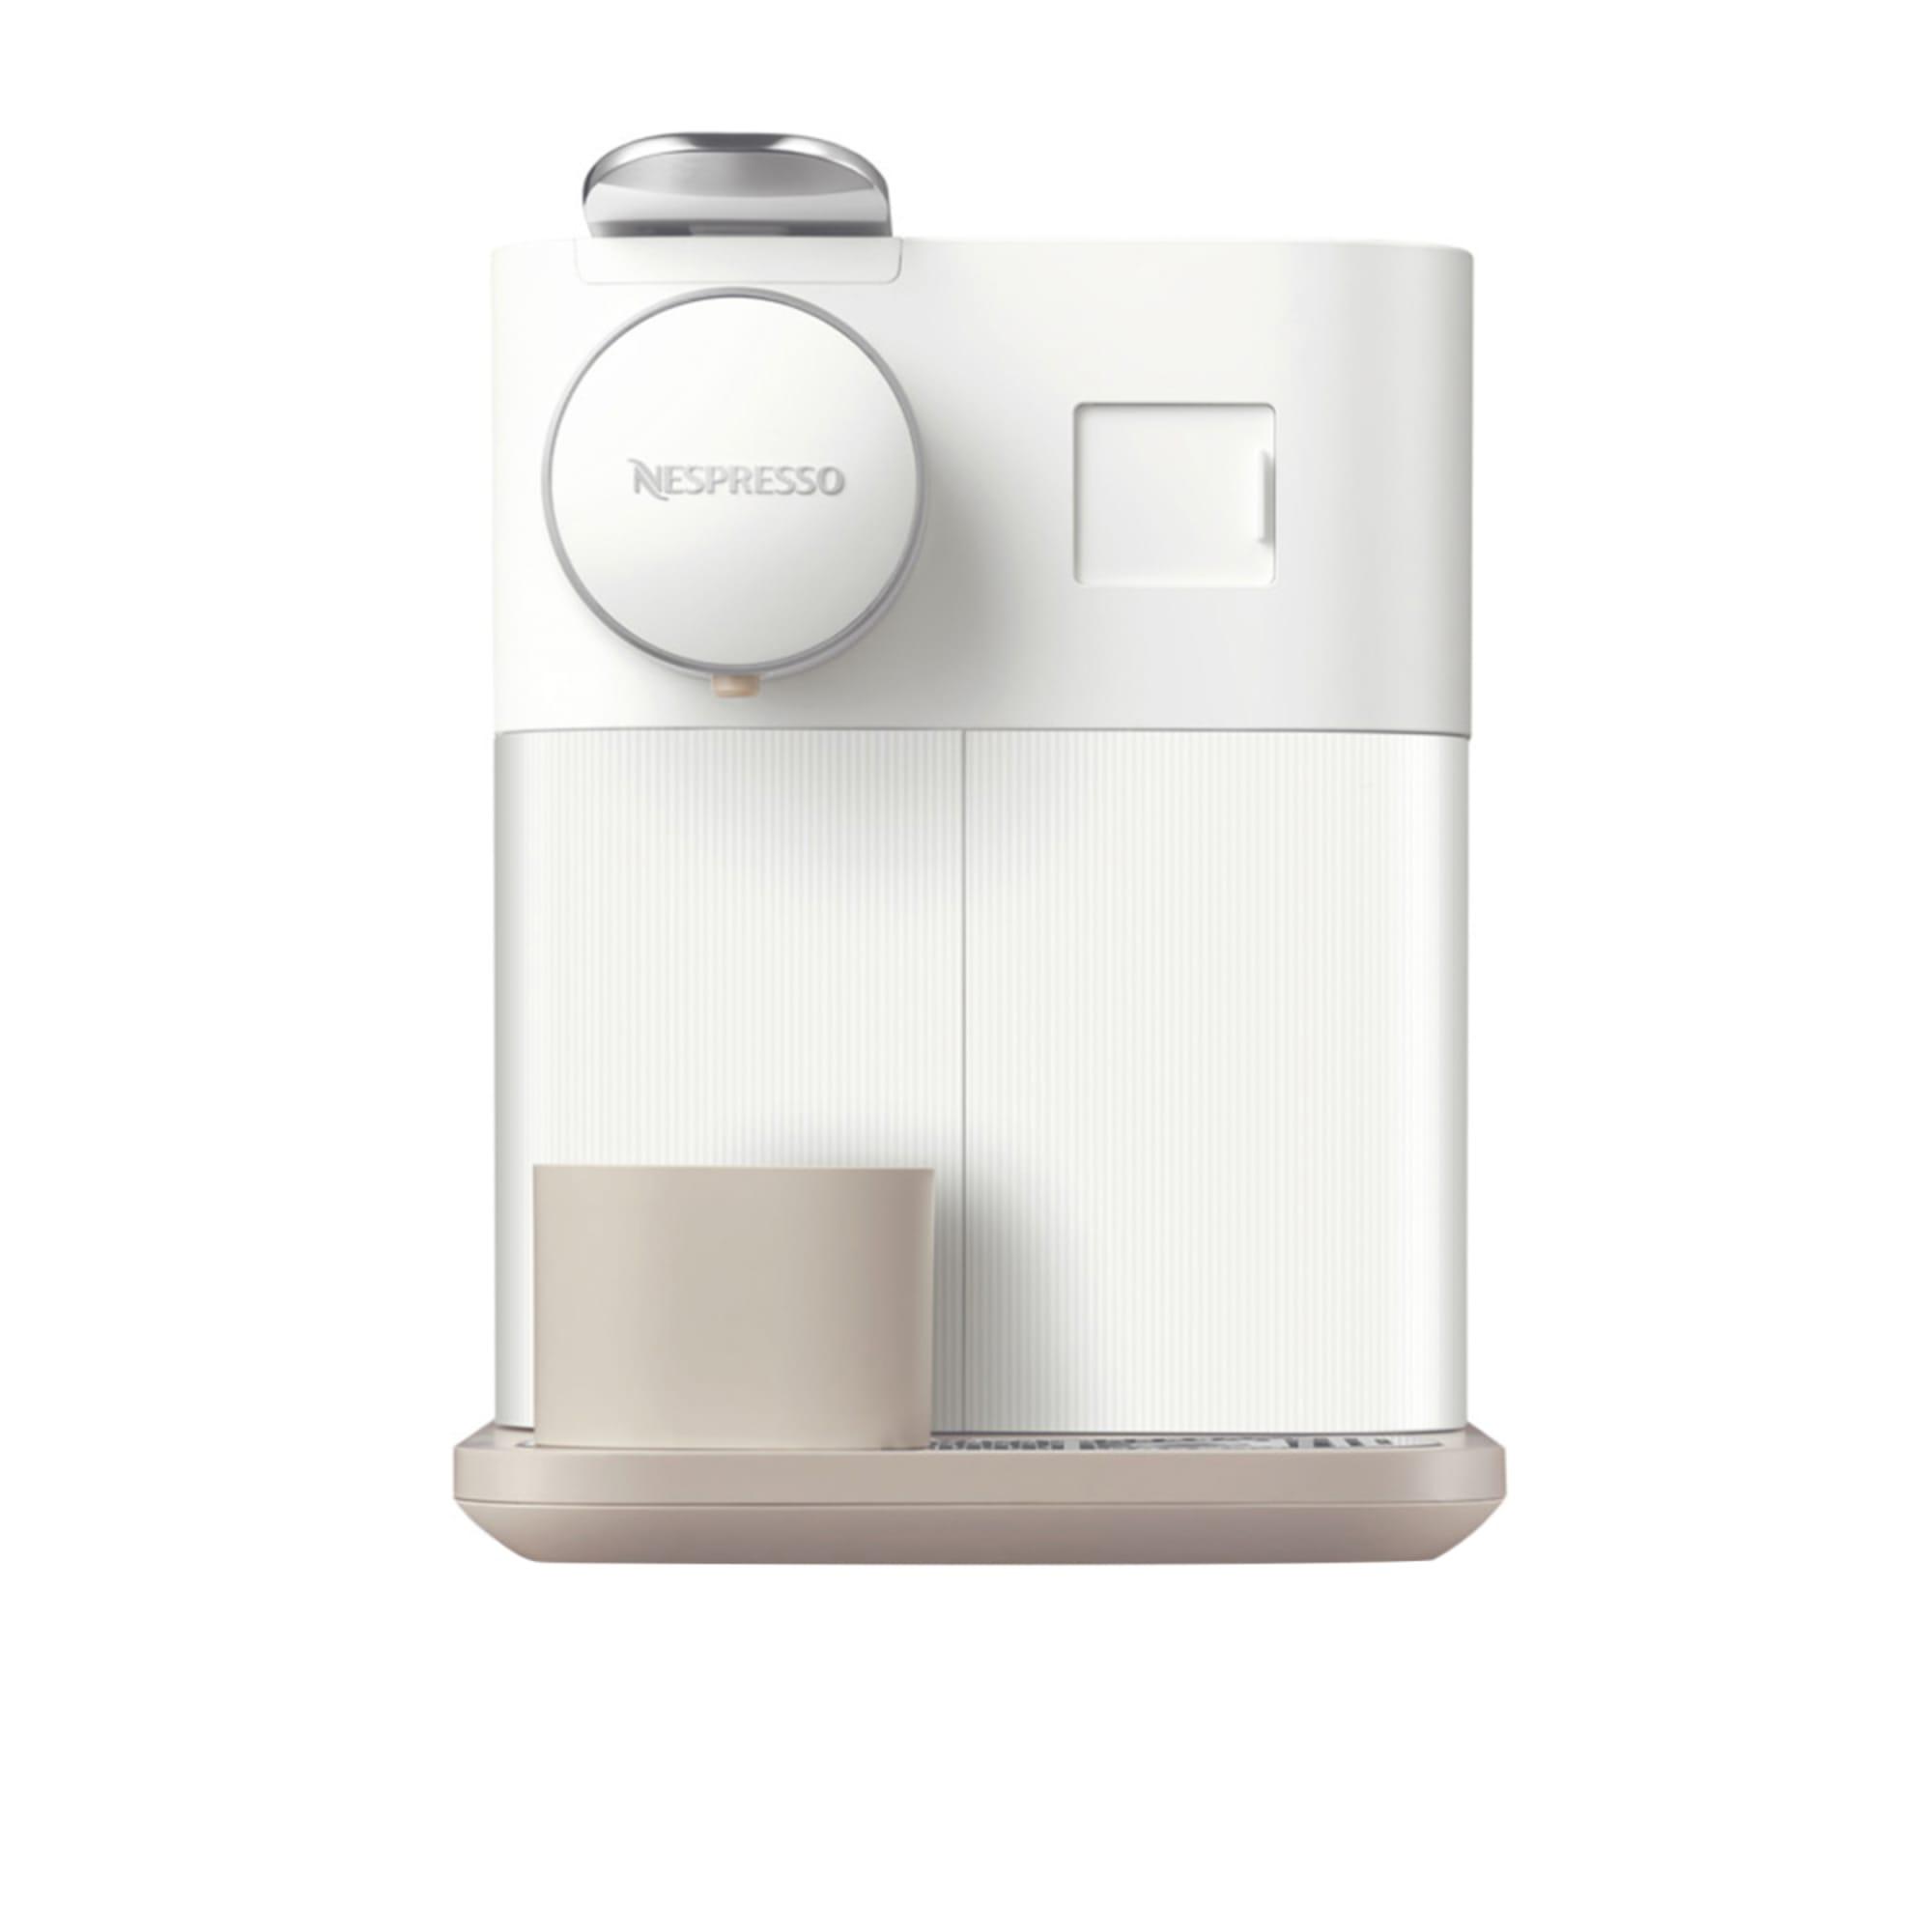 DeLonghi Nespresso Gran Lattisima EN650W Automatic Capsule Coffee Machine White Image 3